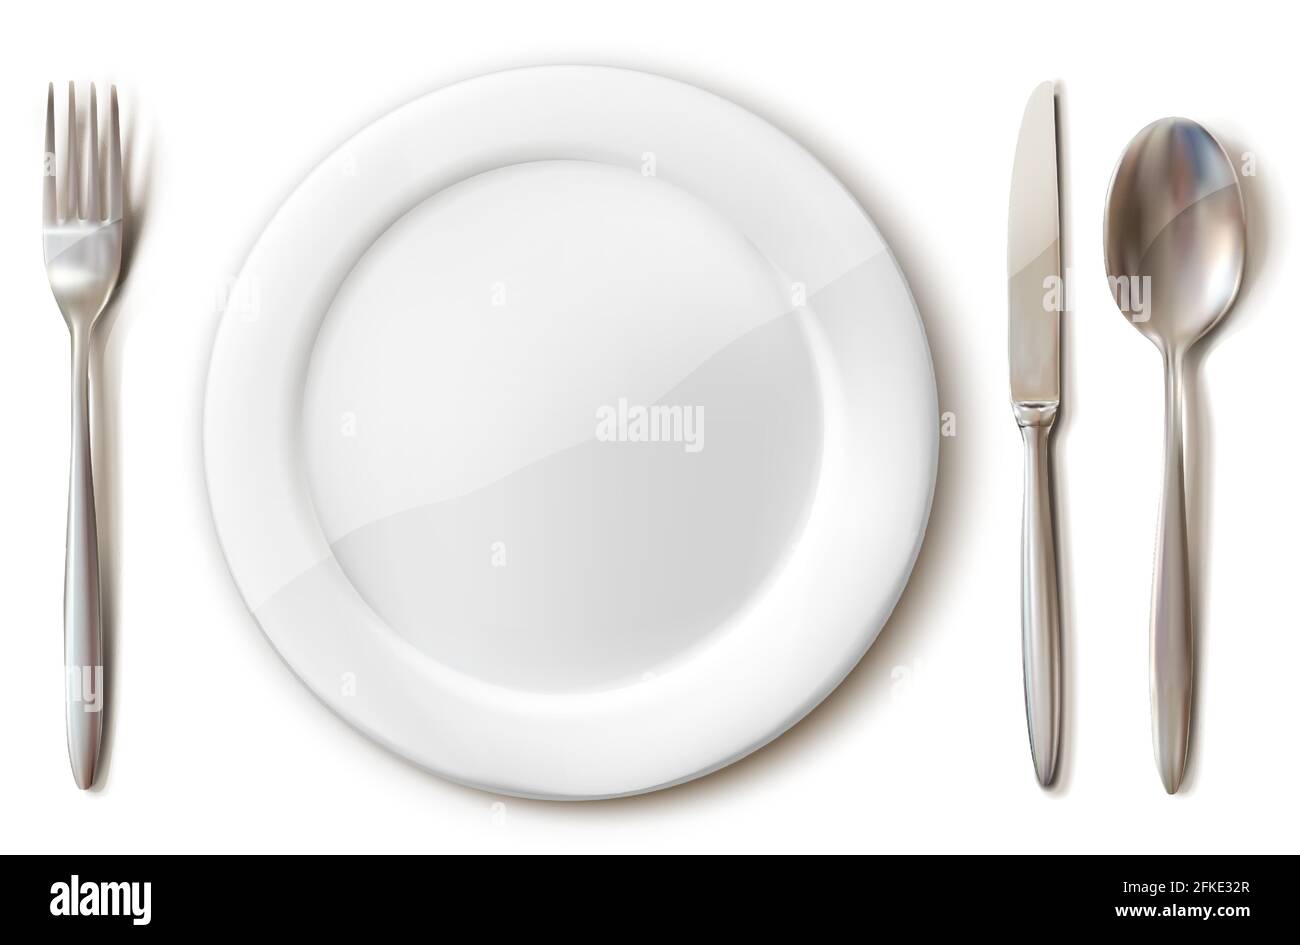 set di posate realistiche con piastra bianca, forchetta, cucchiaio e coltello. Isolato su sfondo bianco. Illustrazione Vettoriale